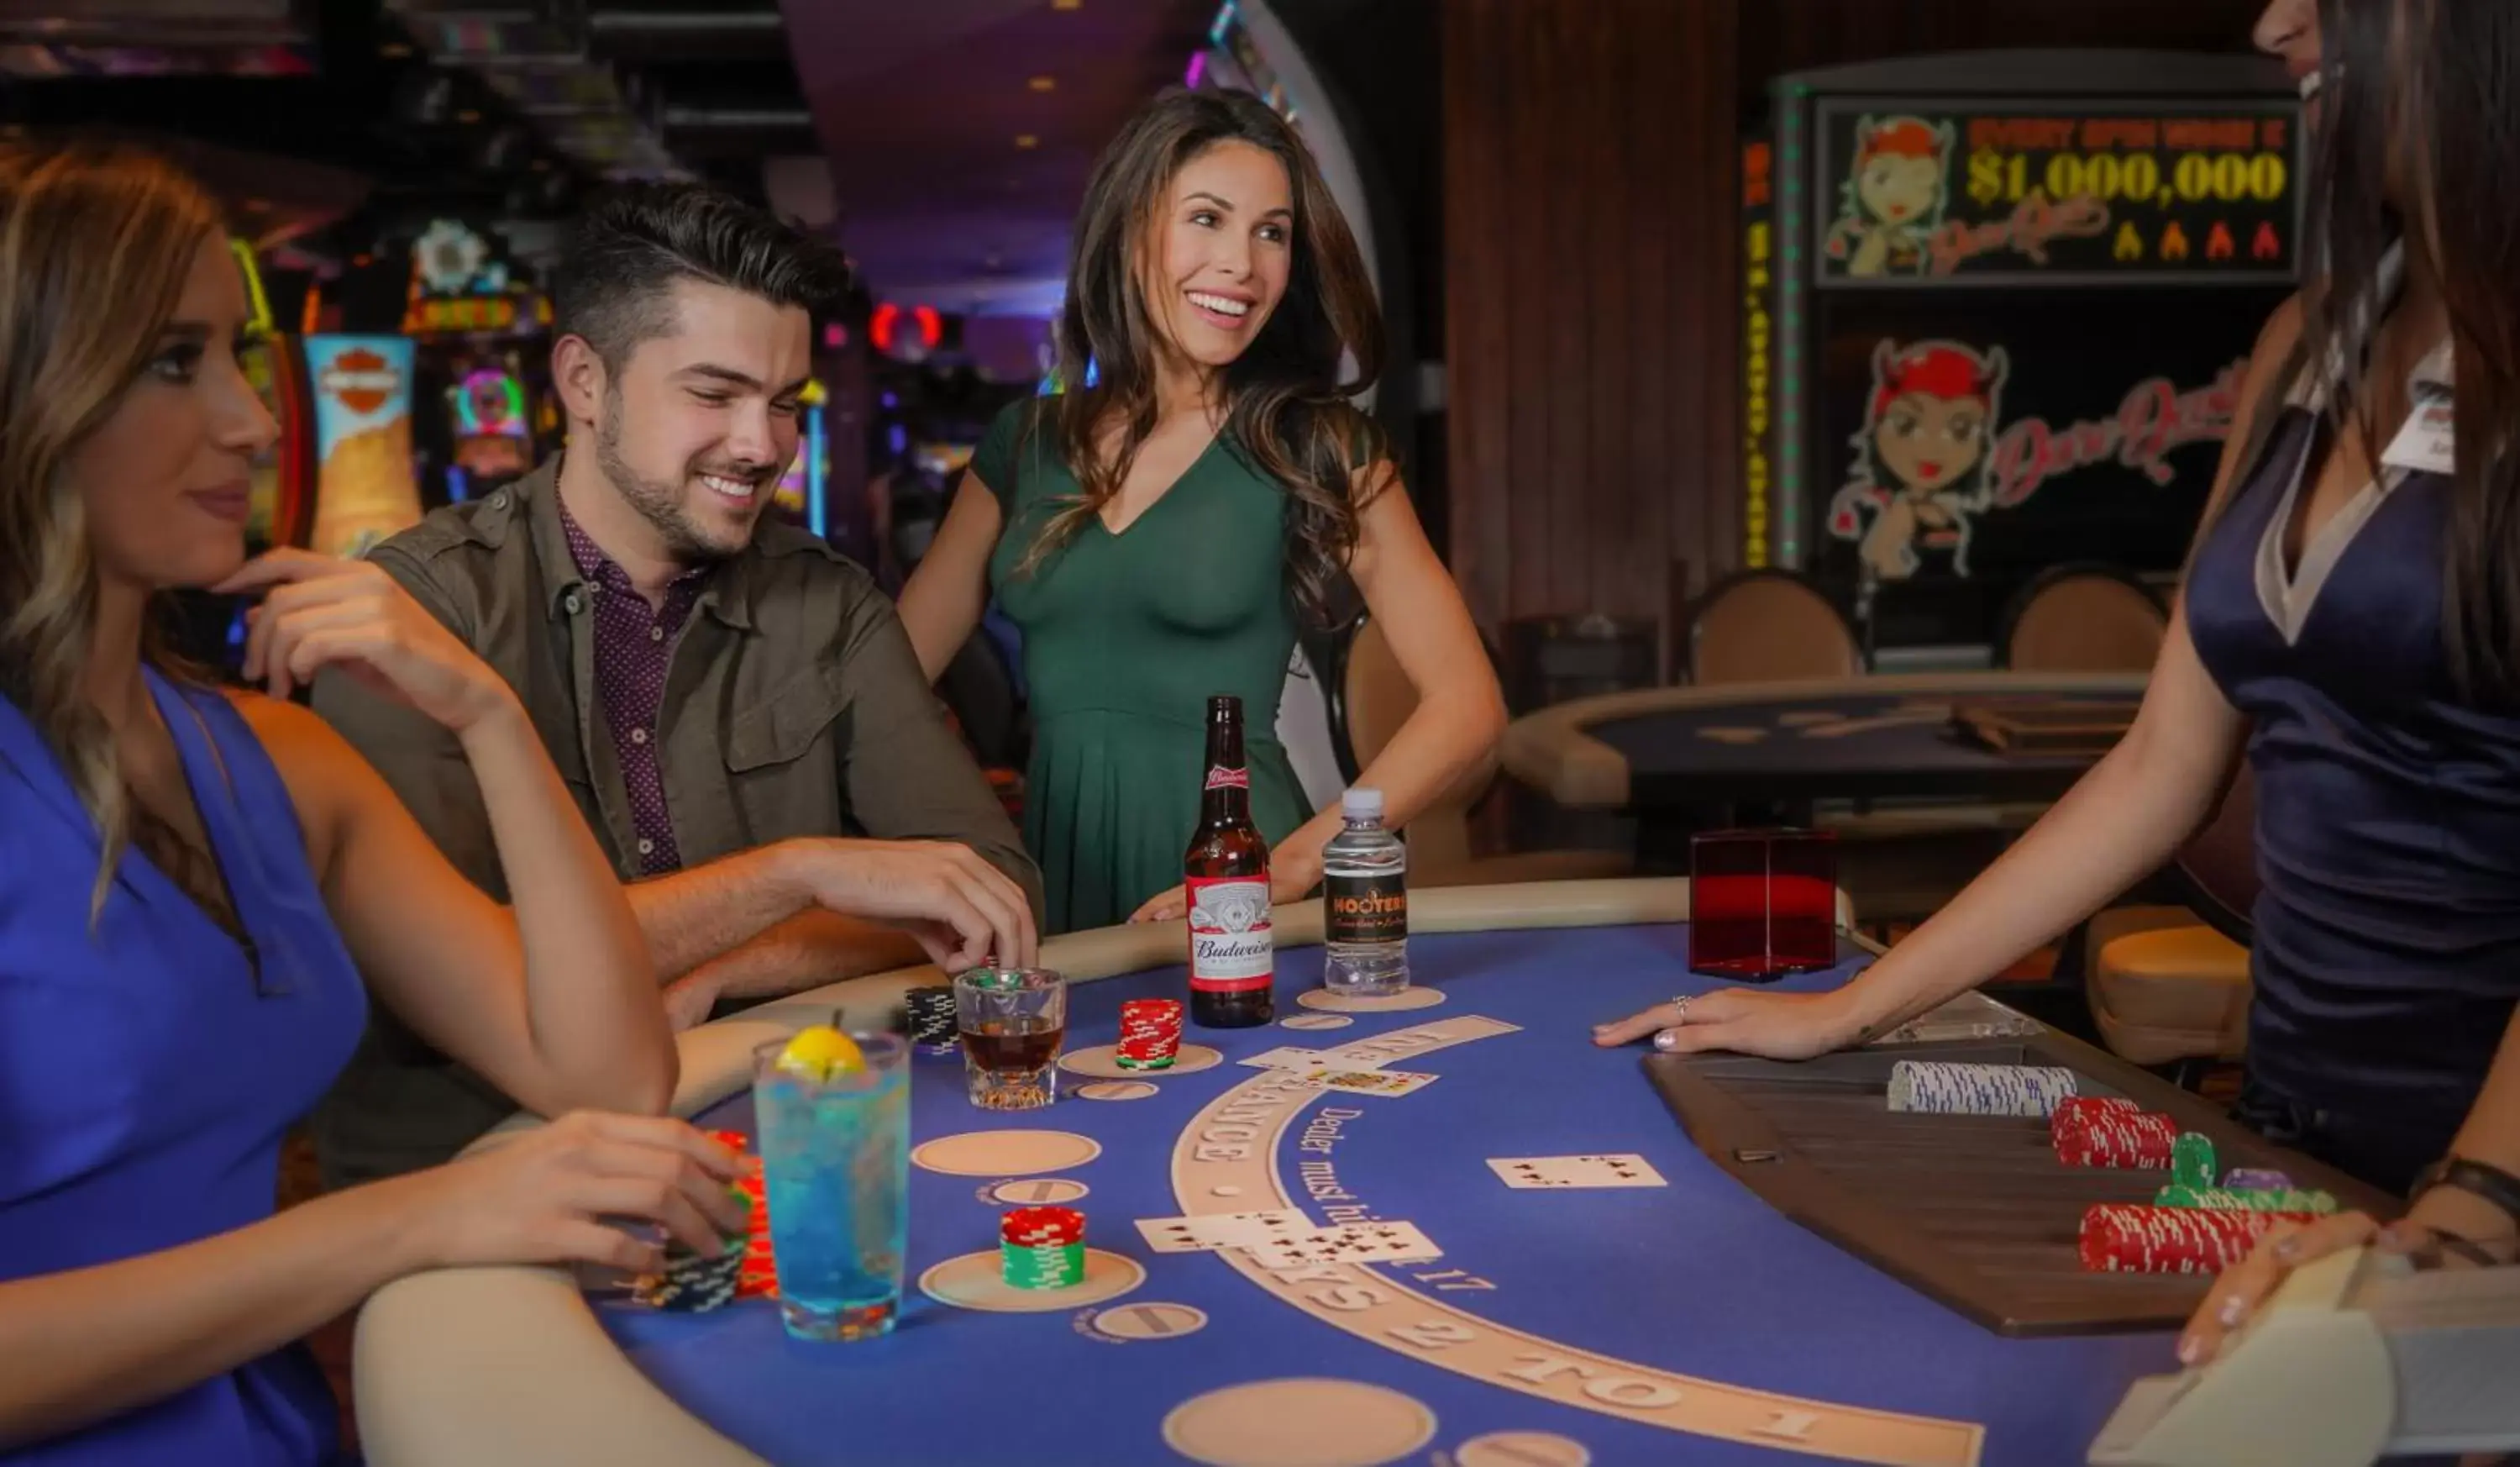 Casino in OYO Hotel and Casino Las Vegas